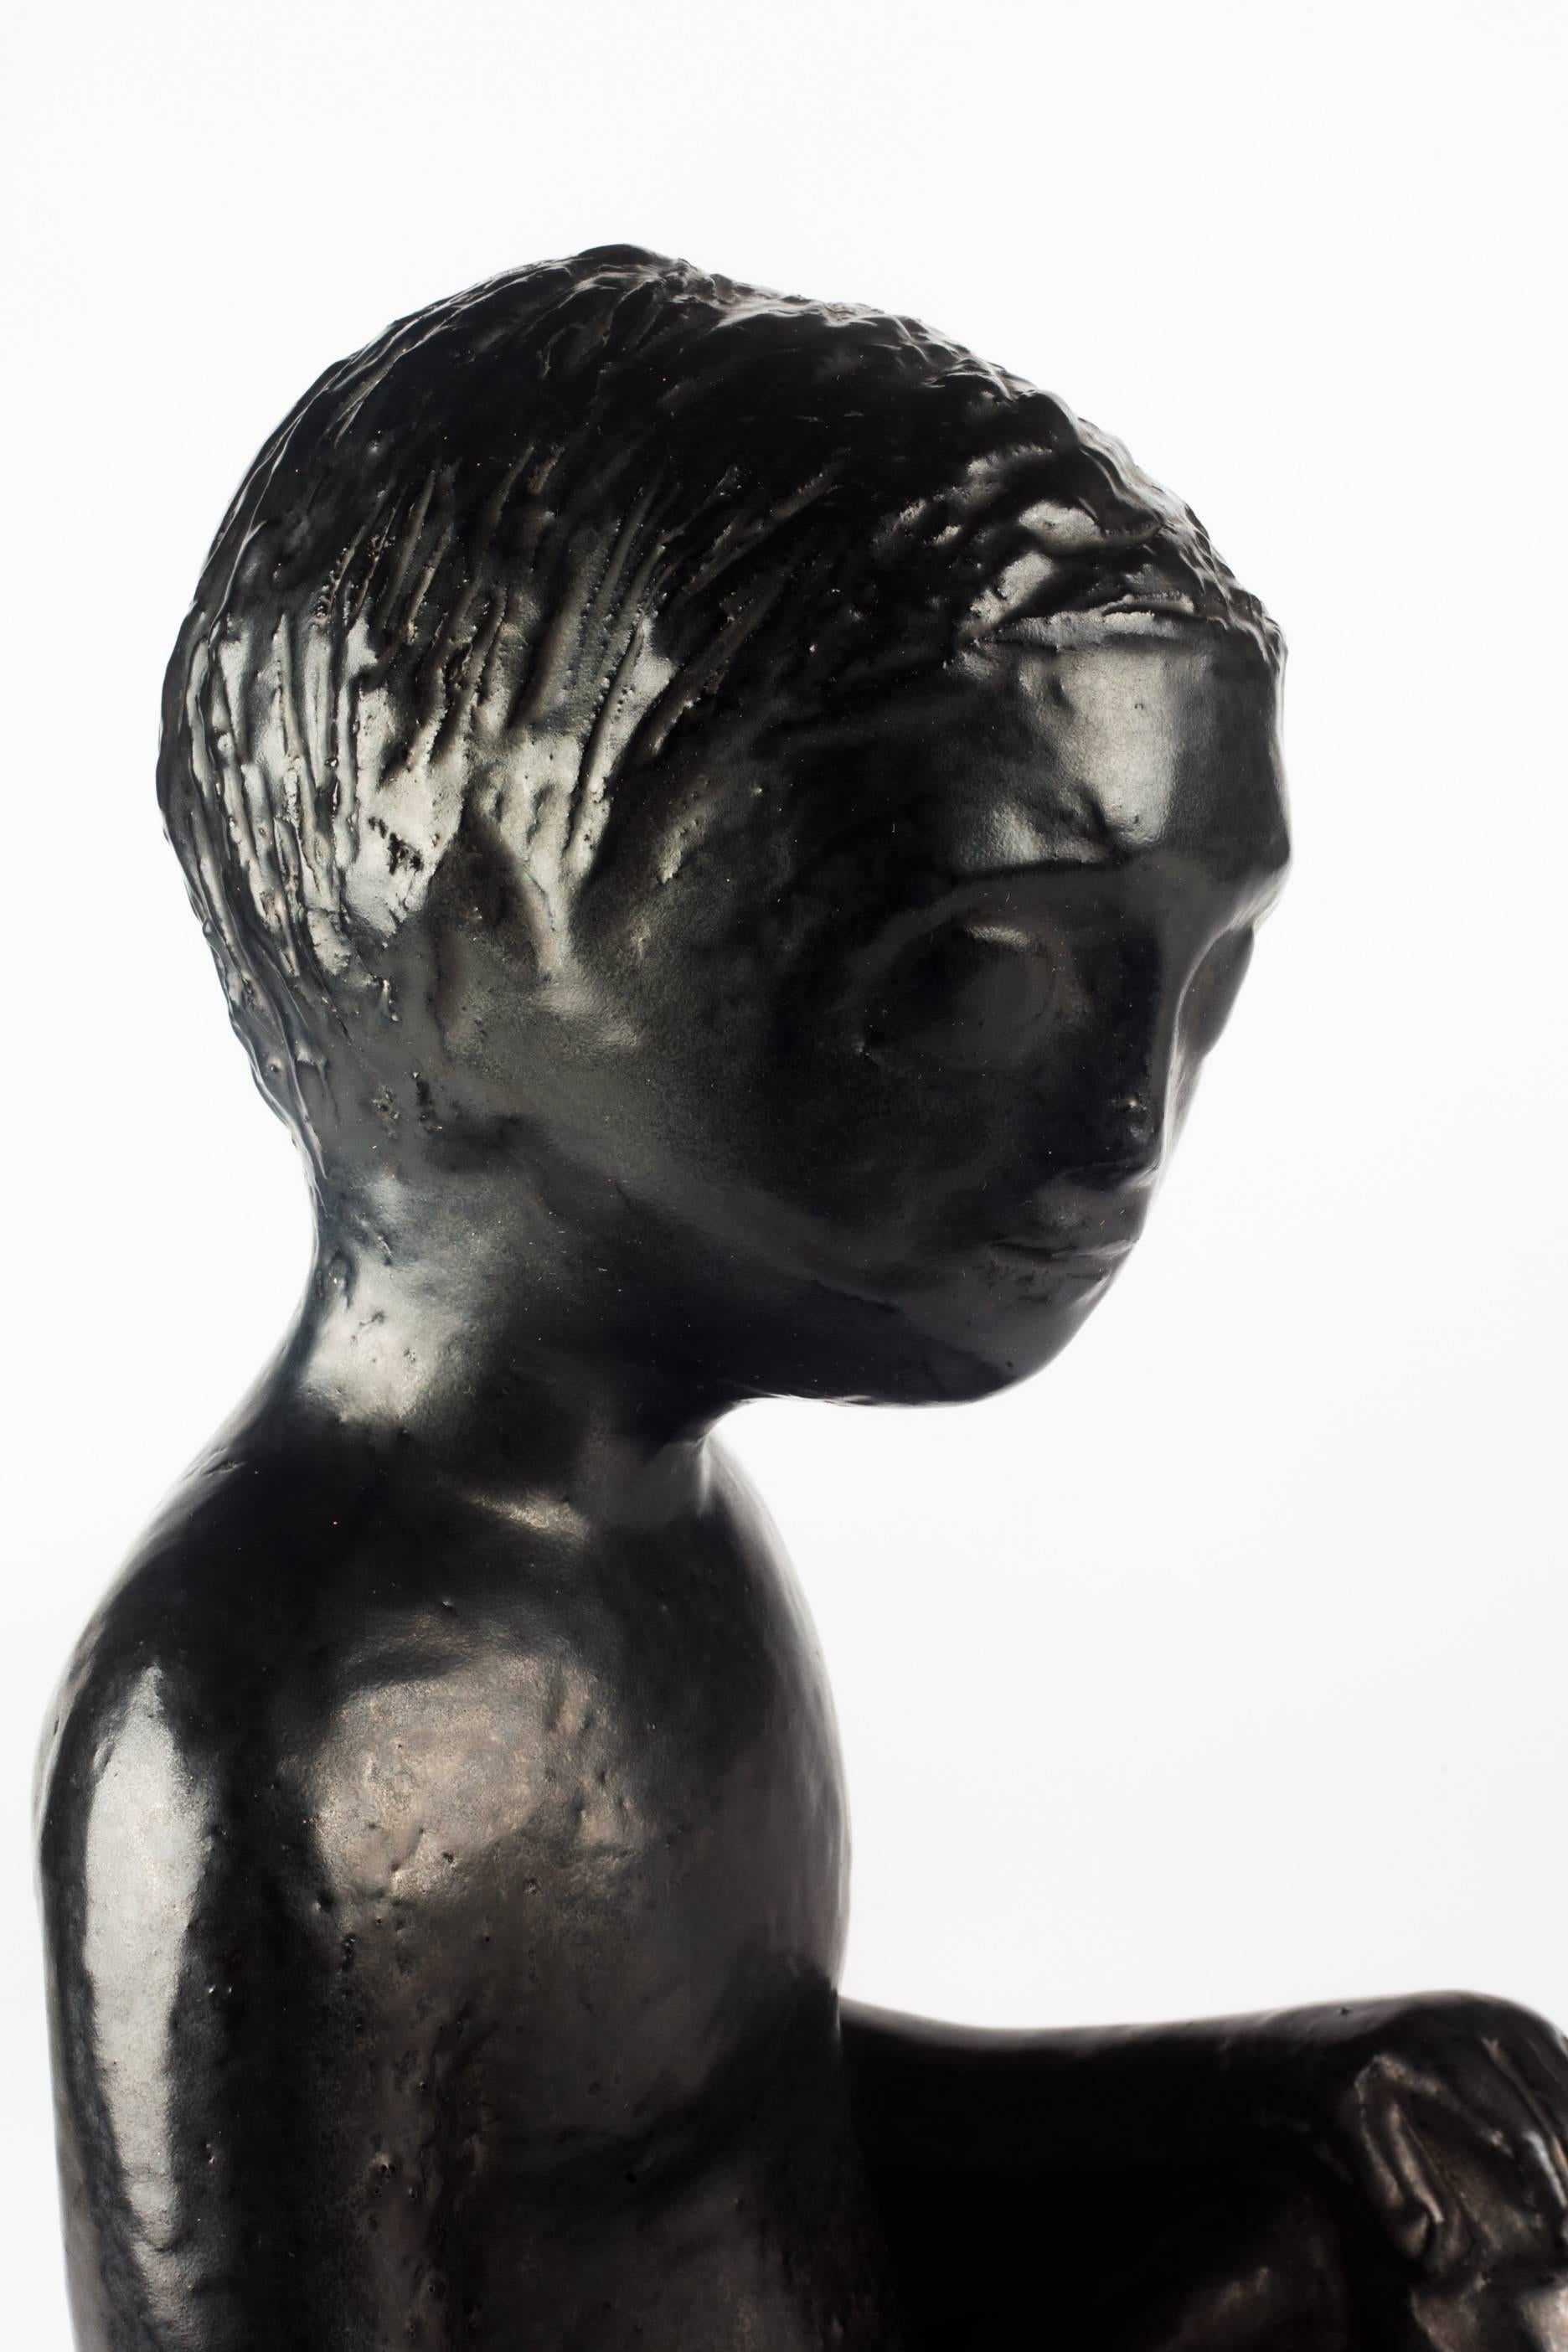 Glazed Child Ceramic Sculpture by Perignem Amphora, Black, Belgium, 1970s